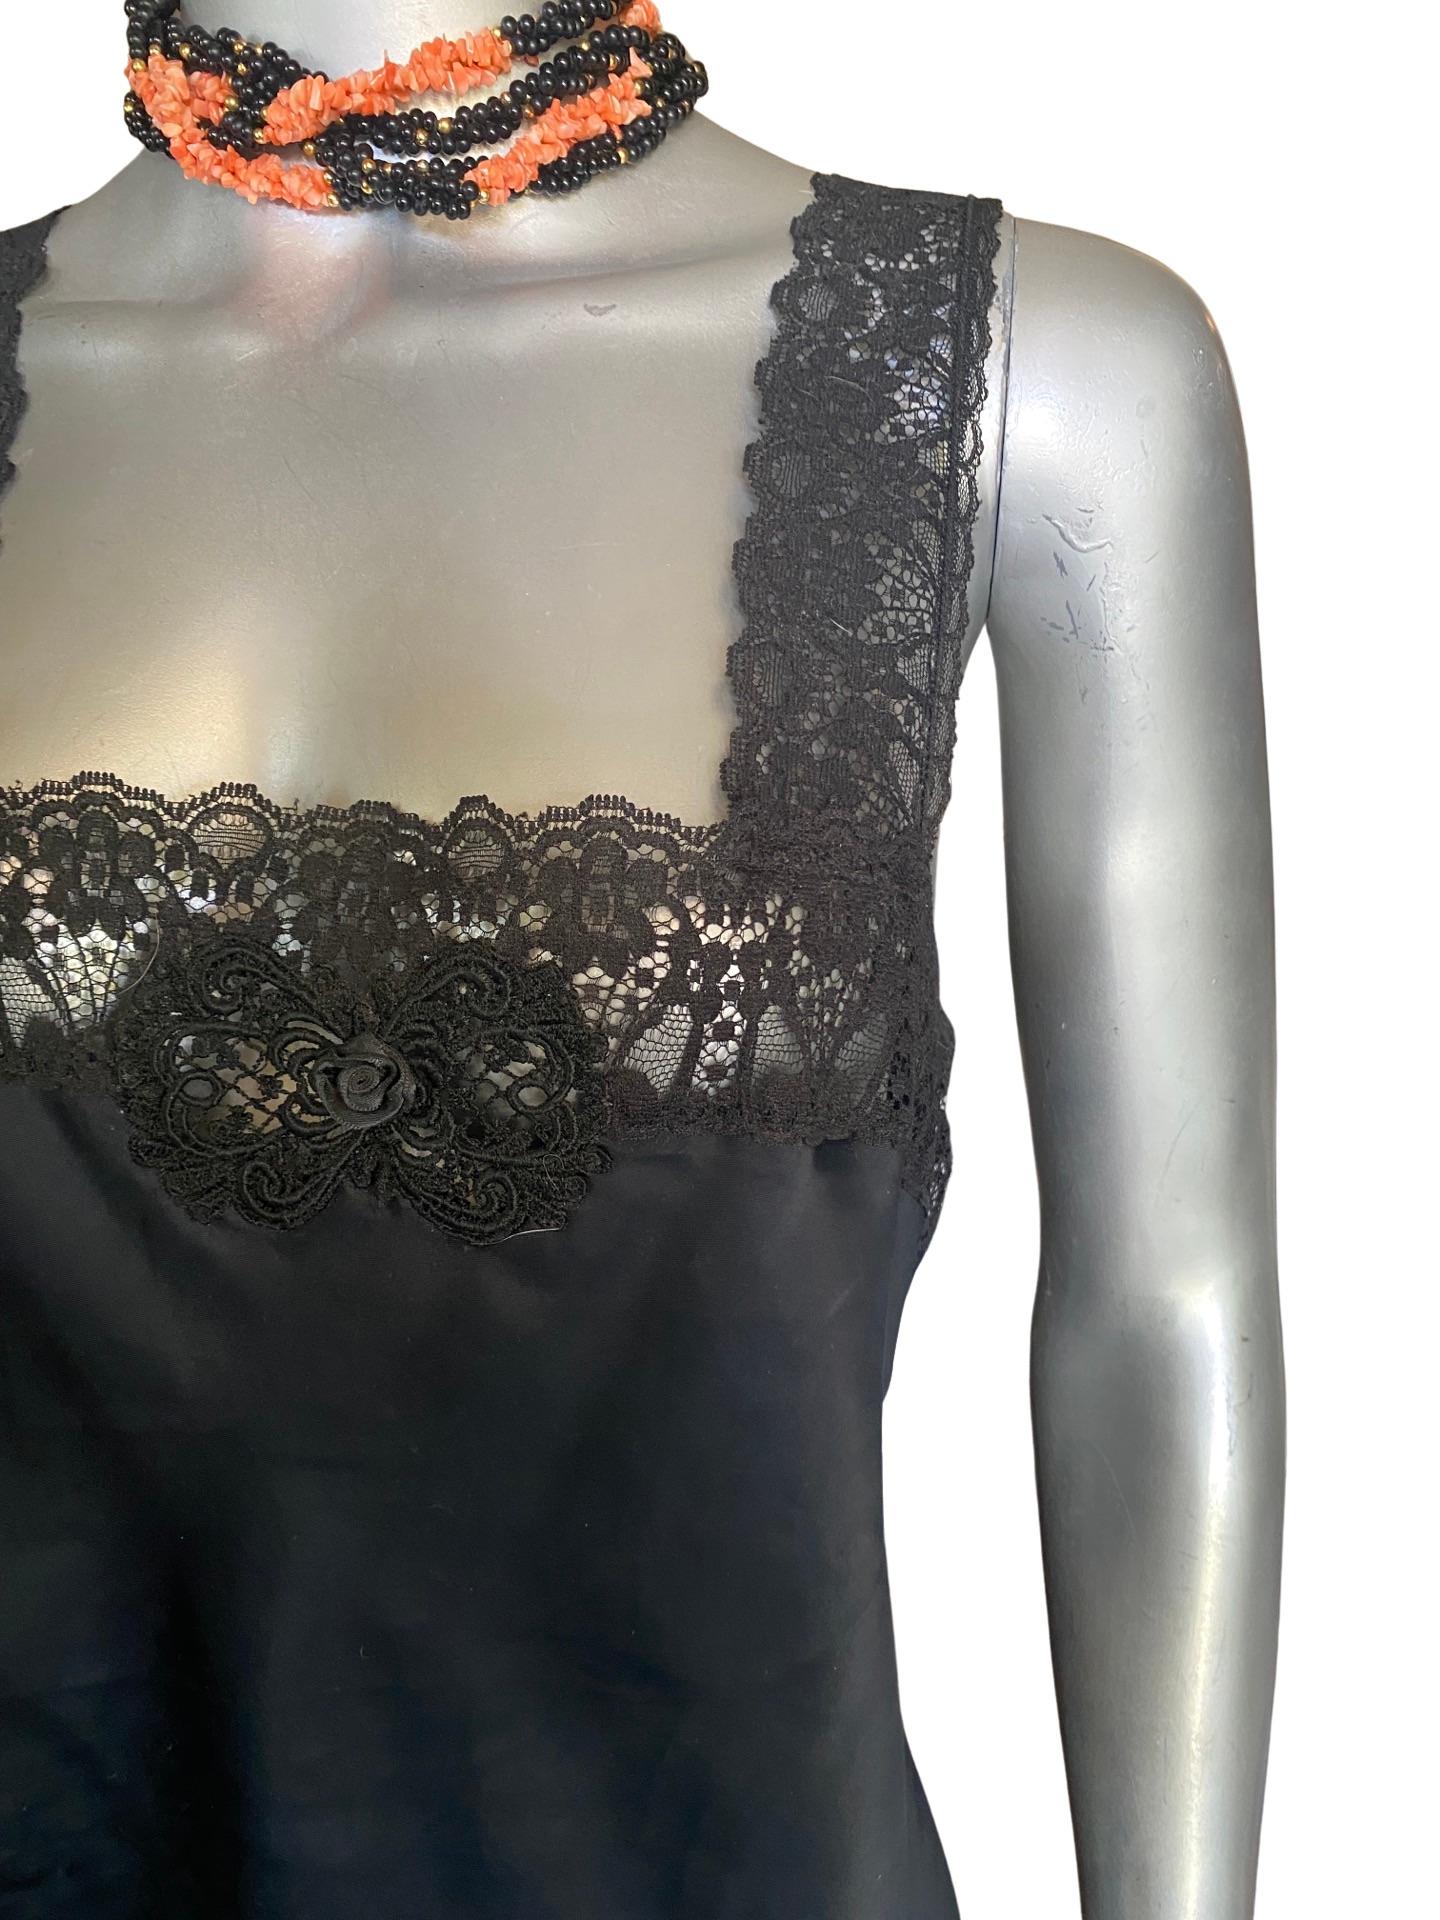 Vintage Christian Dior Black Camisole Blouse w/ Lace Trim Size Medium For Sale 1